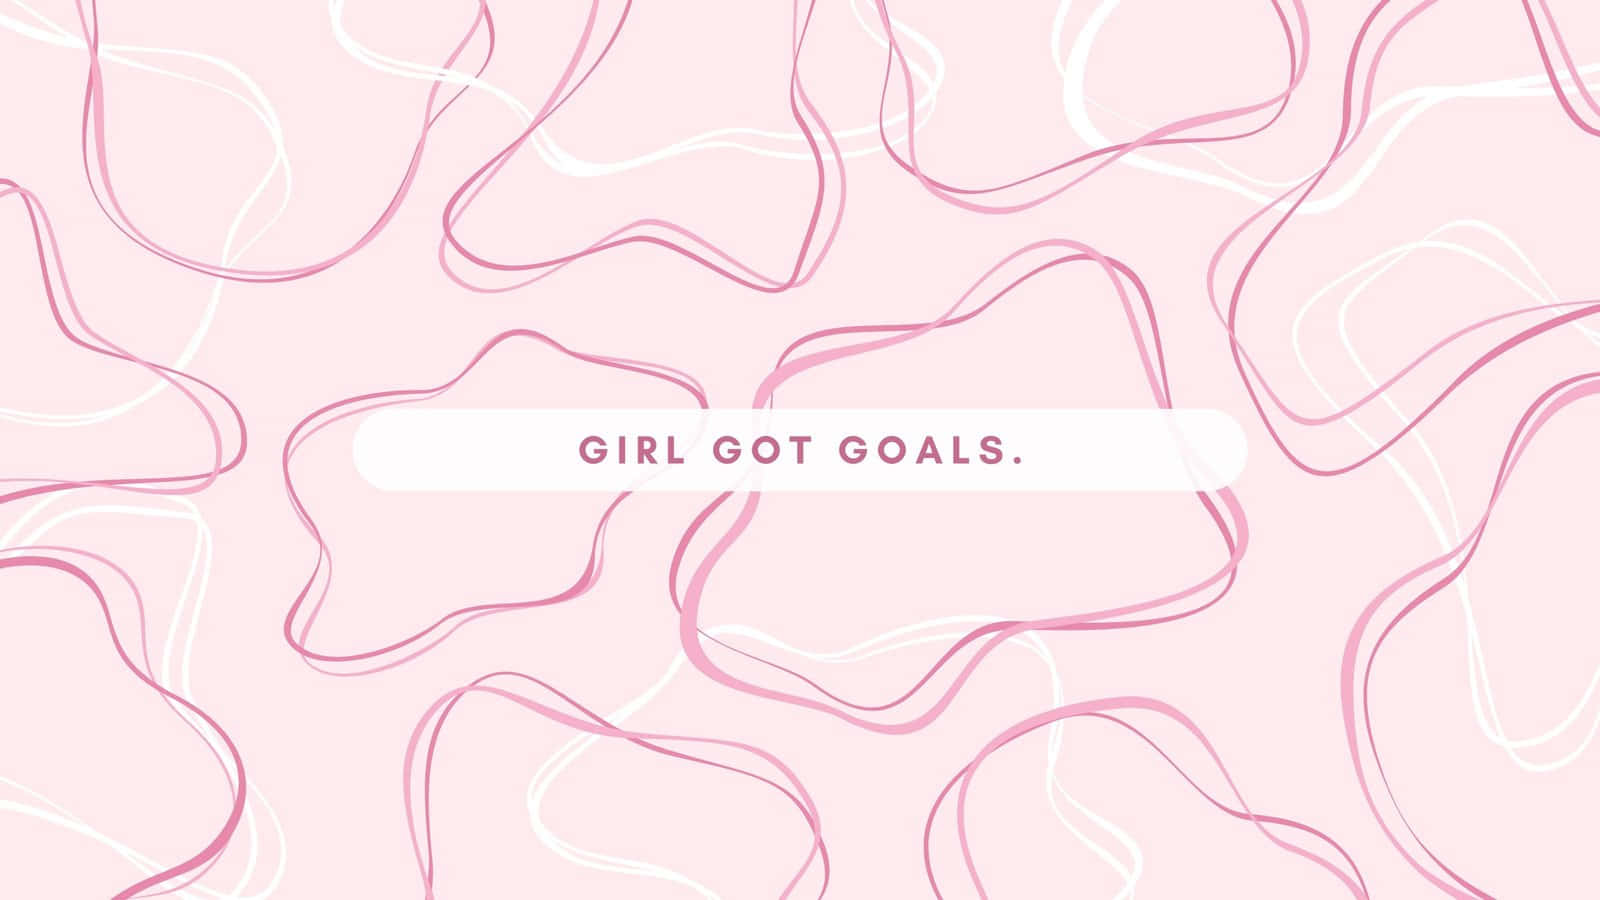 Girl Got Goals Inspirational Quote Wallpaper